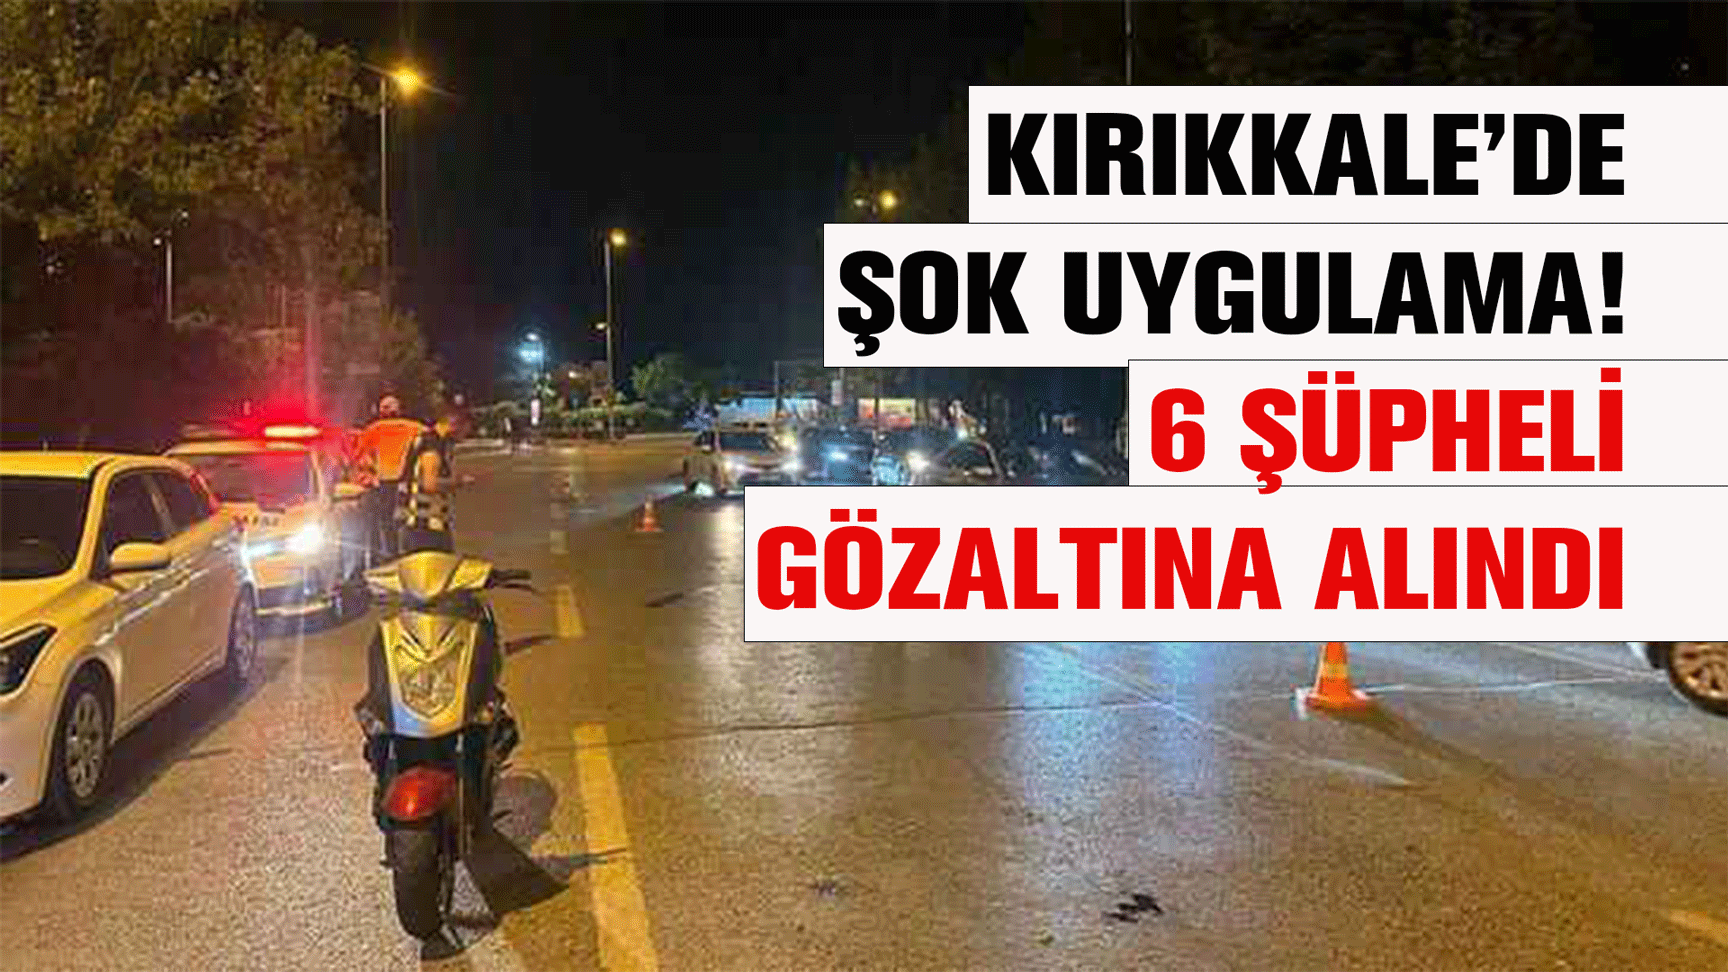 Kırıkkale’de şok uygulama! 6 şüpheli gözaltına alındı